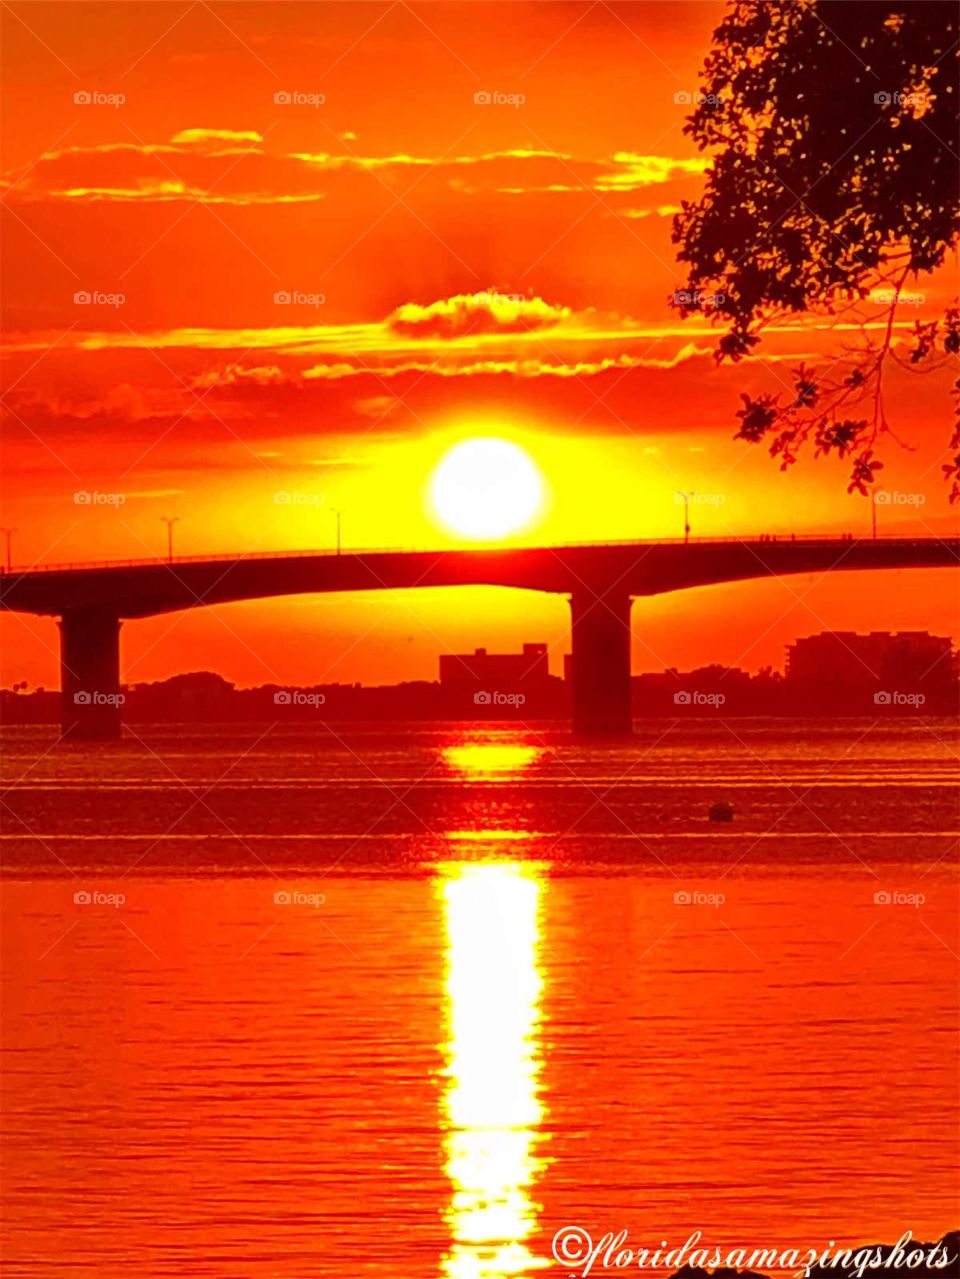 Sarasota Florida sunset